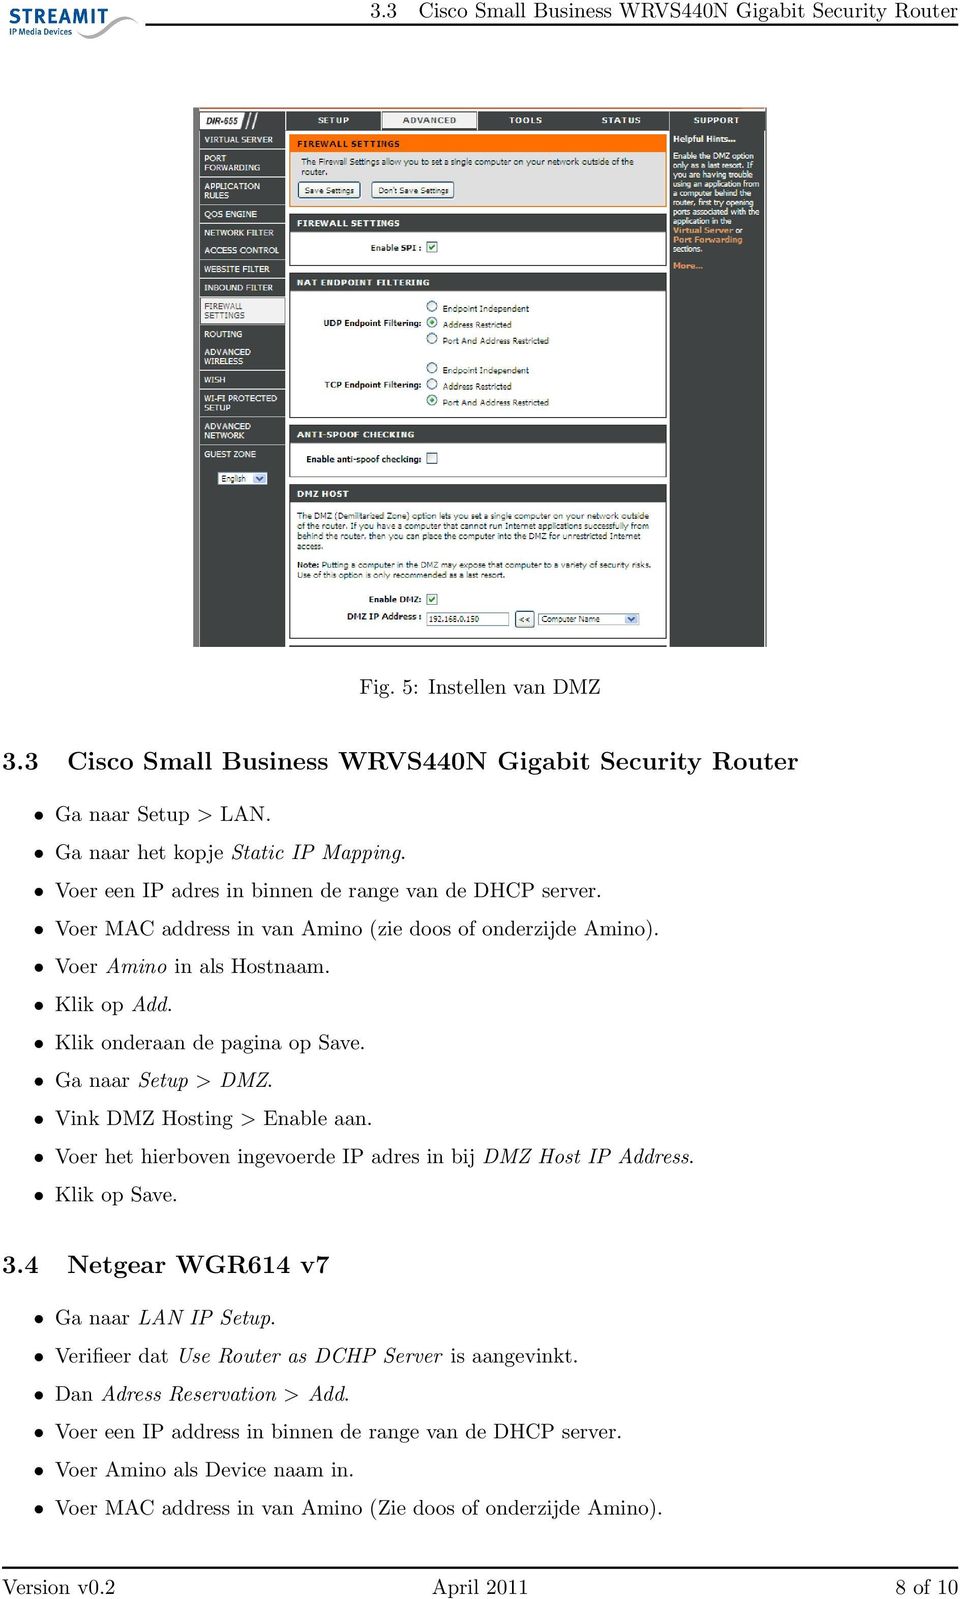 Ga naar Setup > DMZ. Vink DMZ Hosting > Enable aan. Voer het hierboven ingevoerde IP adres in bij DMZ Host IP Address. Klik op Save. 3.4 Netgear WGR614 v7 Ga naar LAN IP Setup.